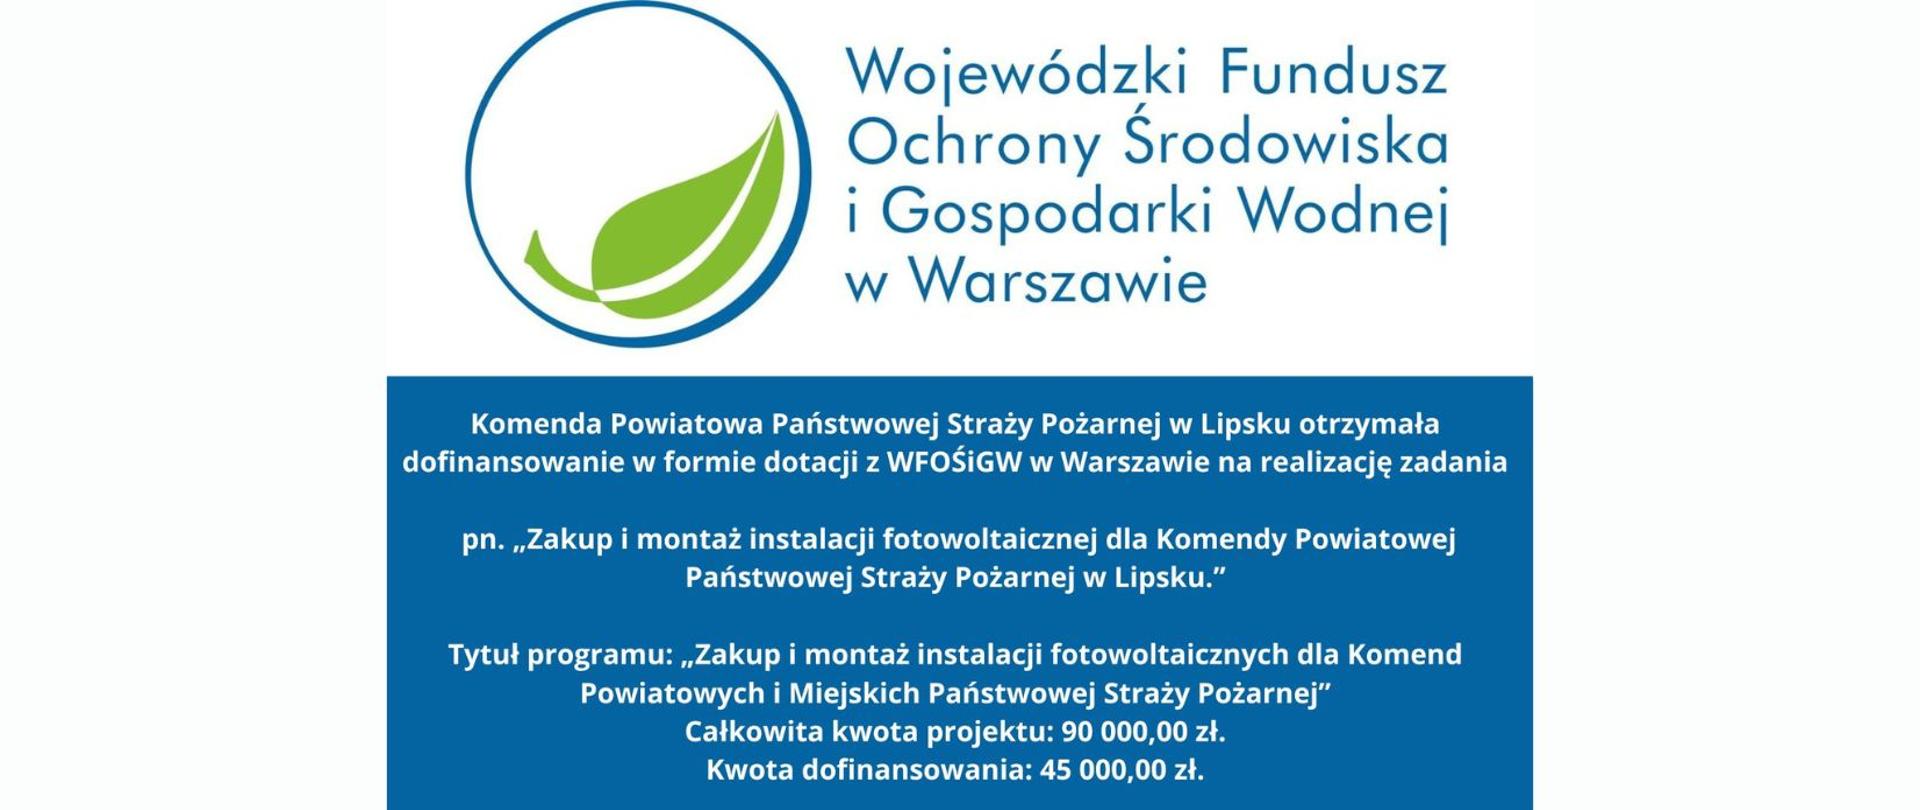 informacja o dofinansowaniu na granatowym tle. W grafice logotyp Wojewódzkiego Funduszu Ochrony Środowiska I Gospodarki Wodnej w Warszawie.